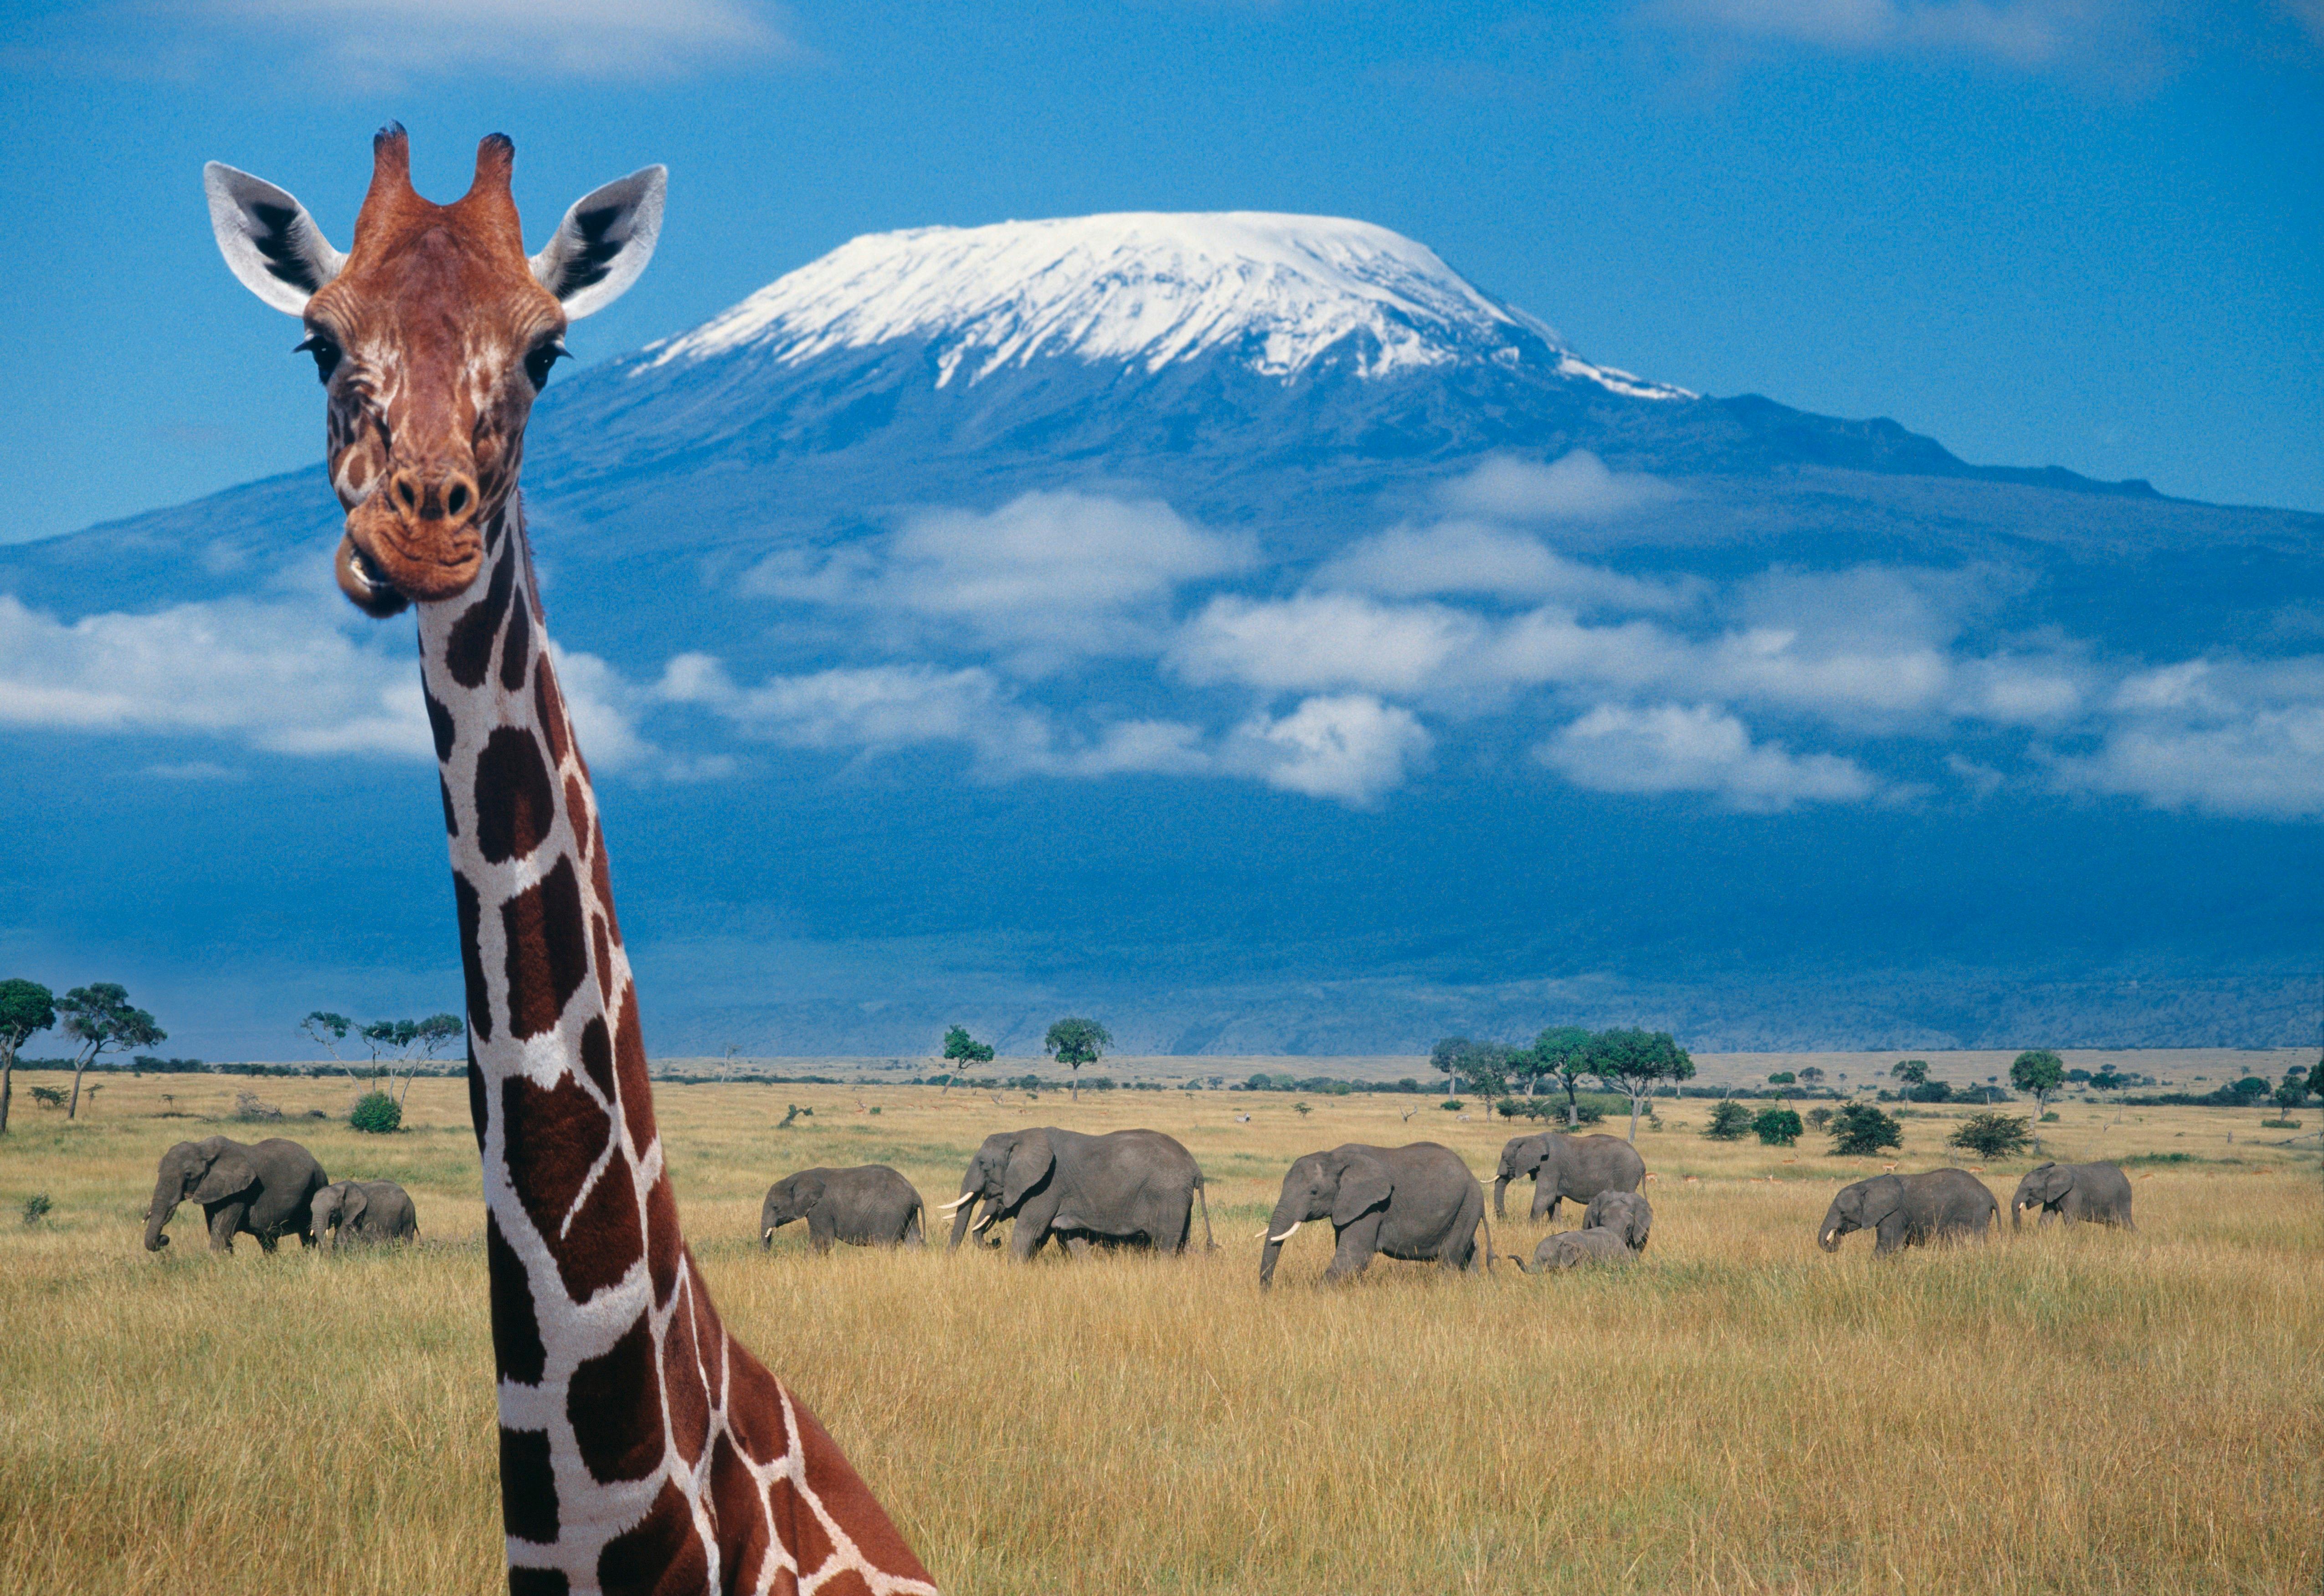 Танзания сафари Килиманджаро